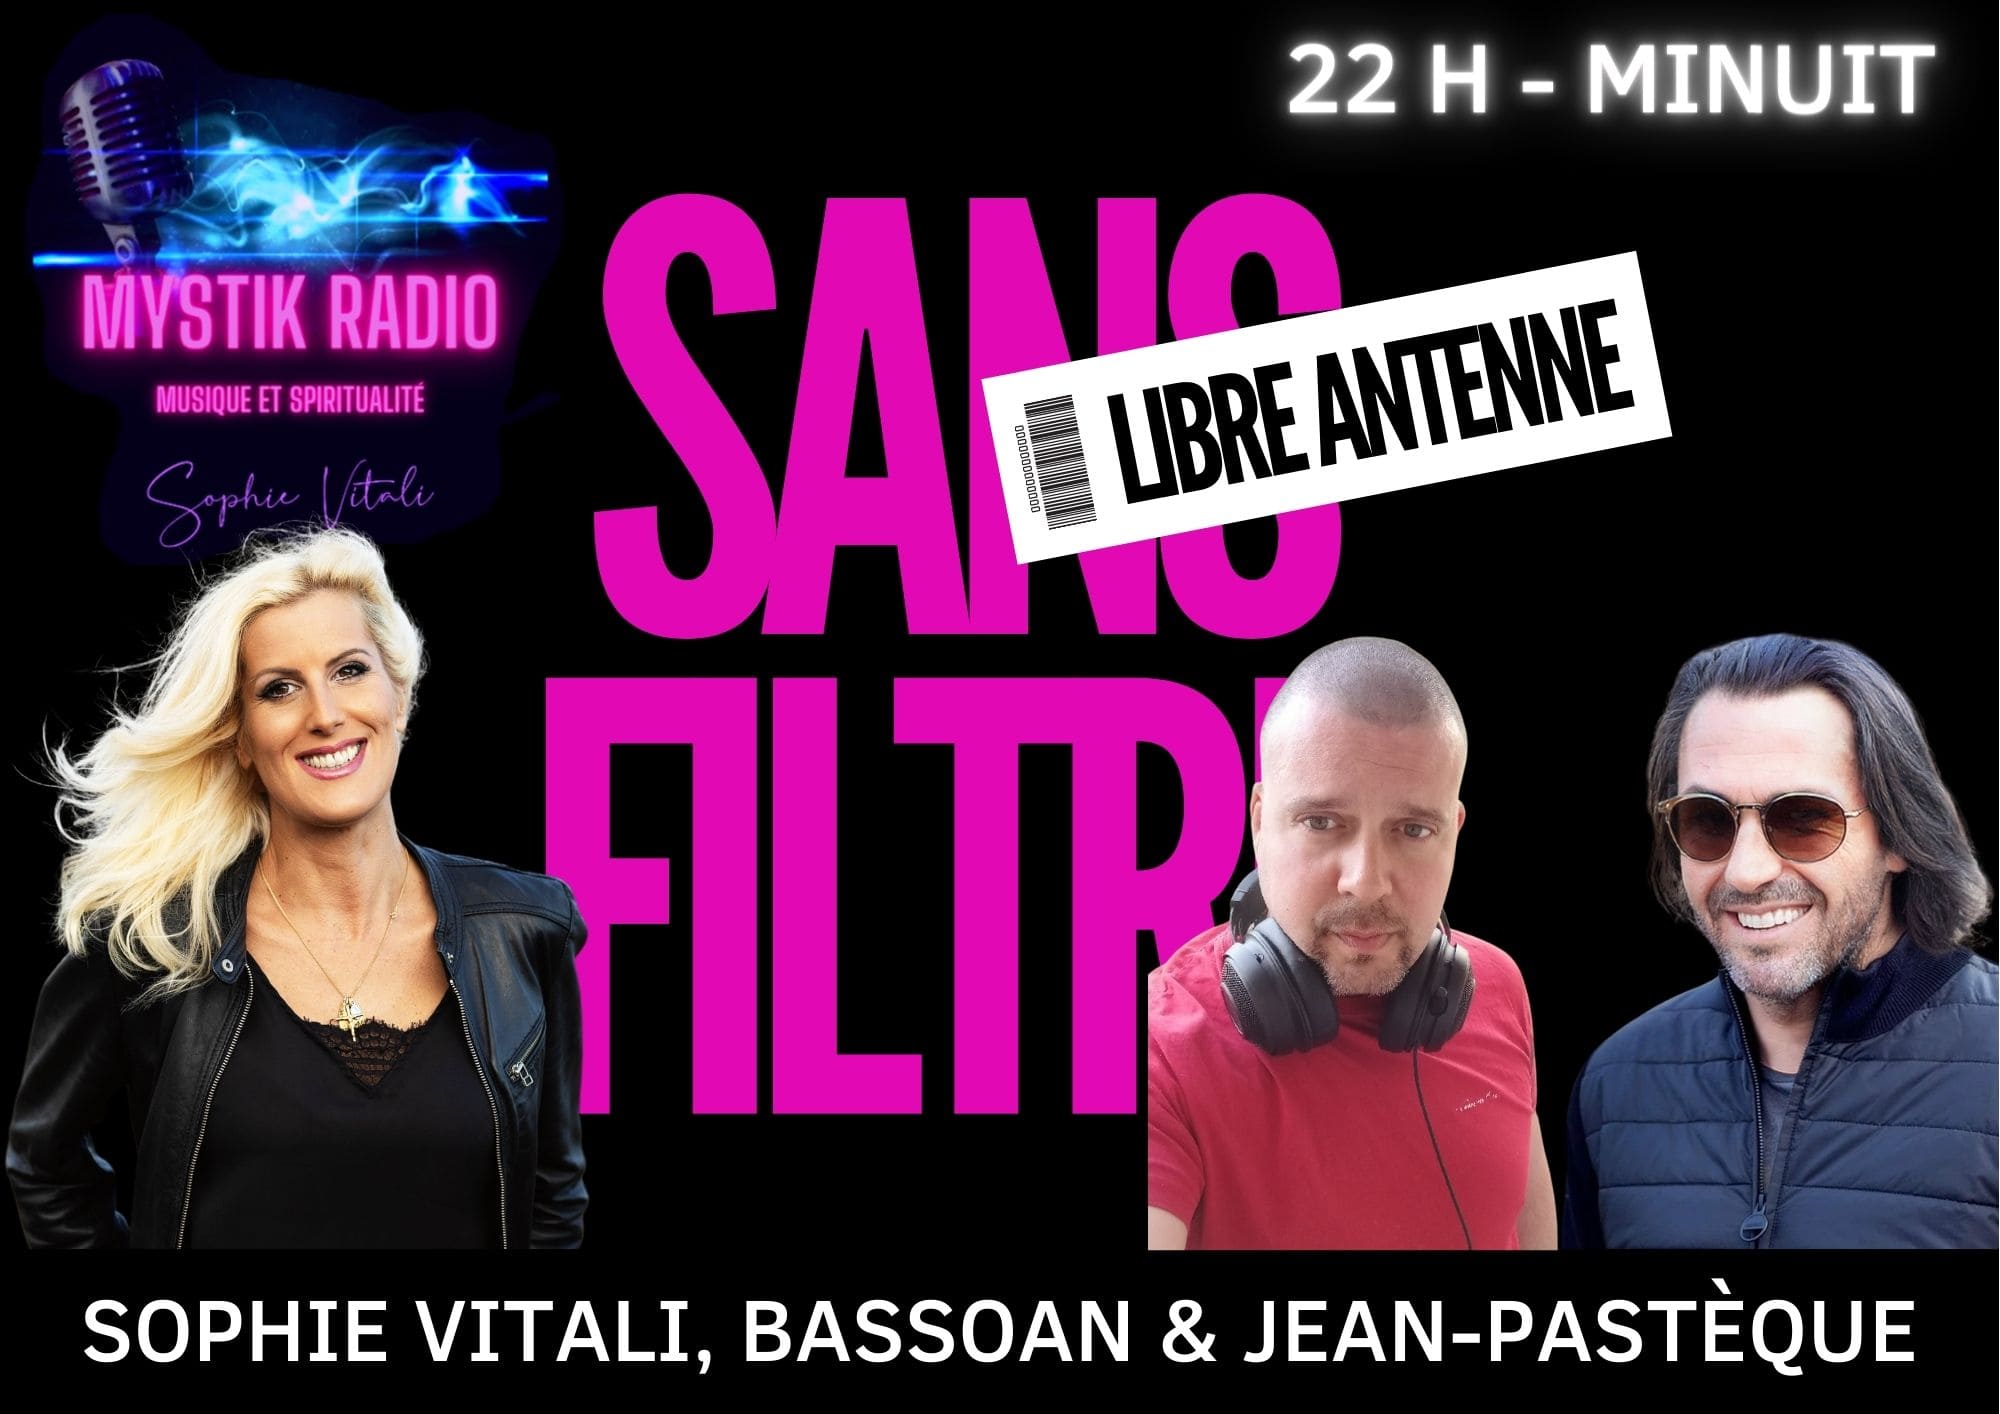 SANS FILTRE ! Le libre-antenne présentée par Sophie Vitali en direct sur Mystik Radio